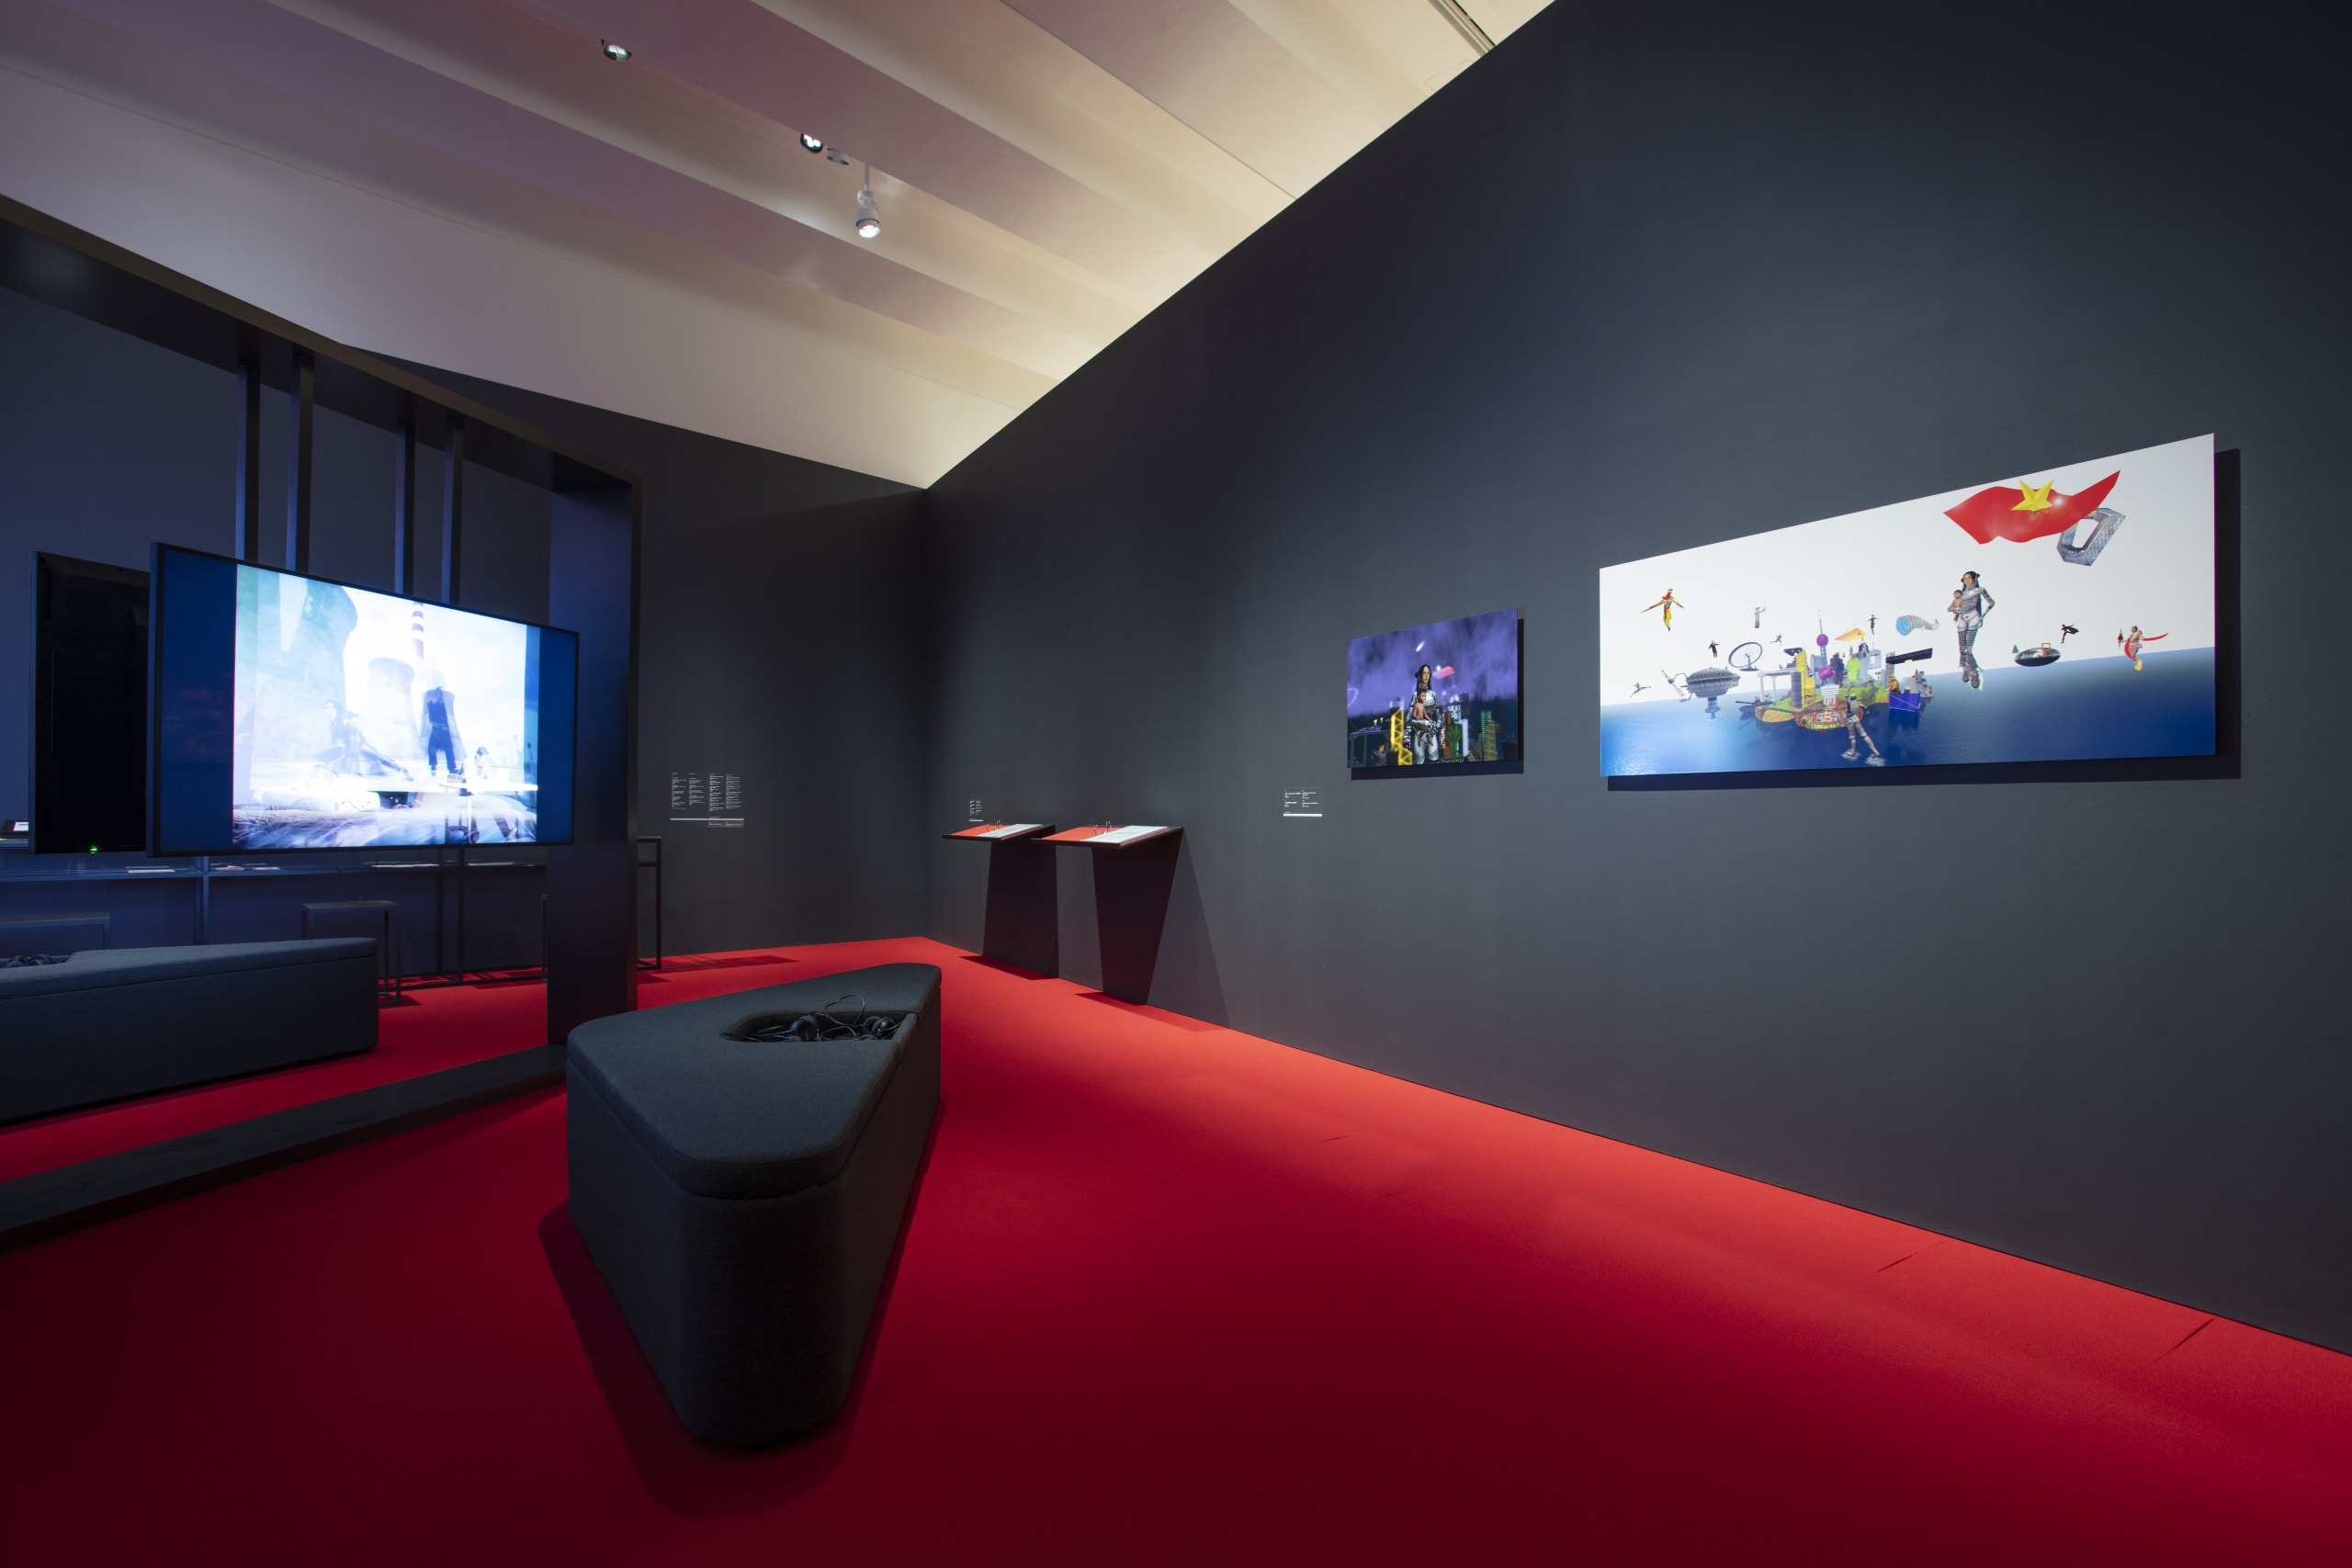 香港當代視覺文化博物館 M+ 正式開幕